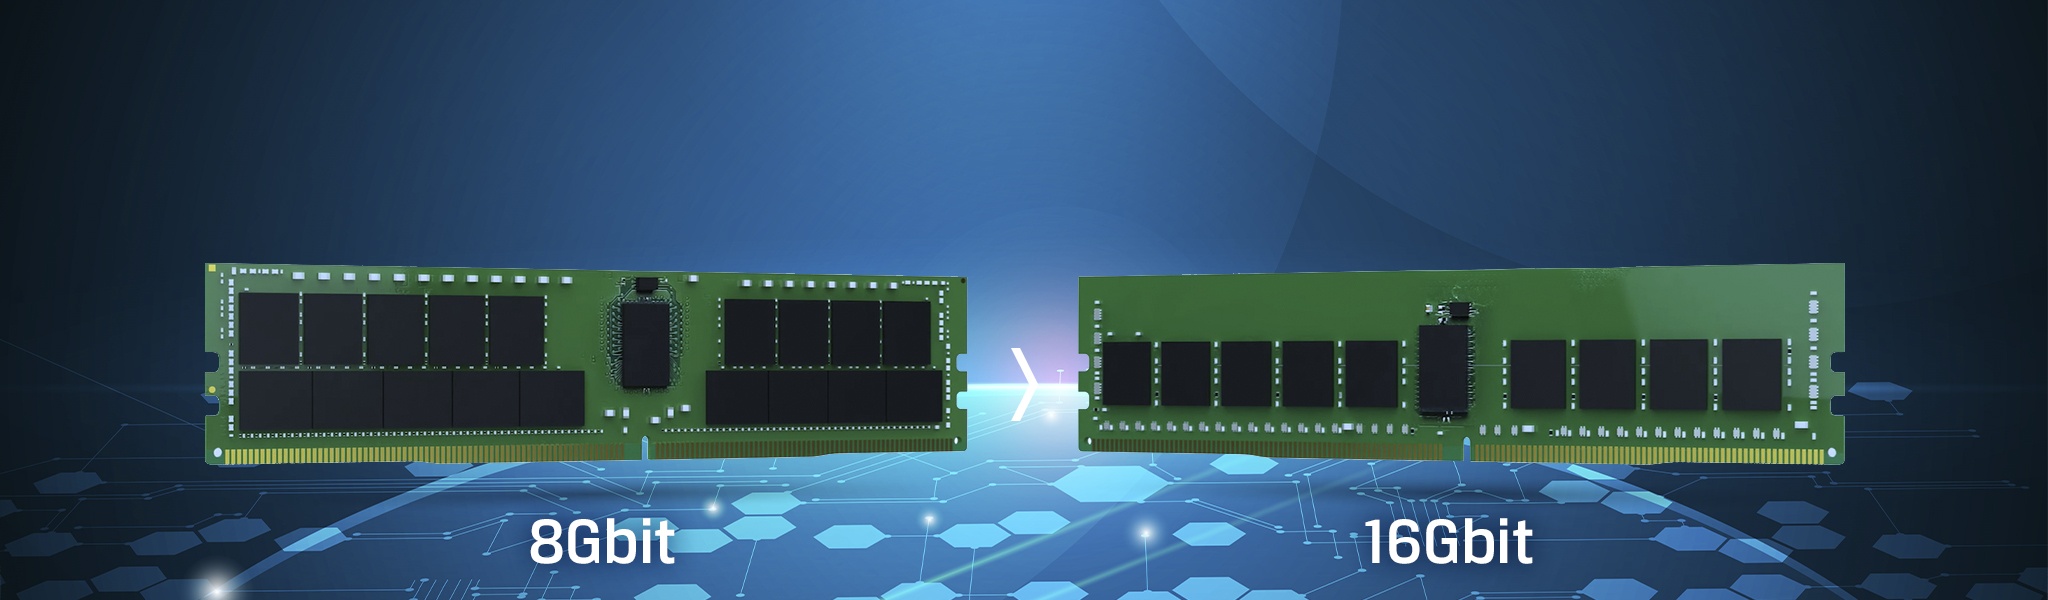 Nadeszła nowa generacja – 16-gigabitowa pamięć DRAM DDR4